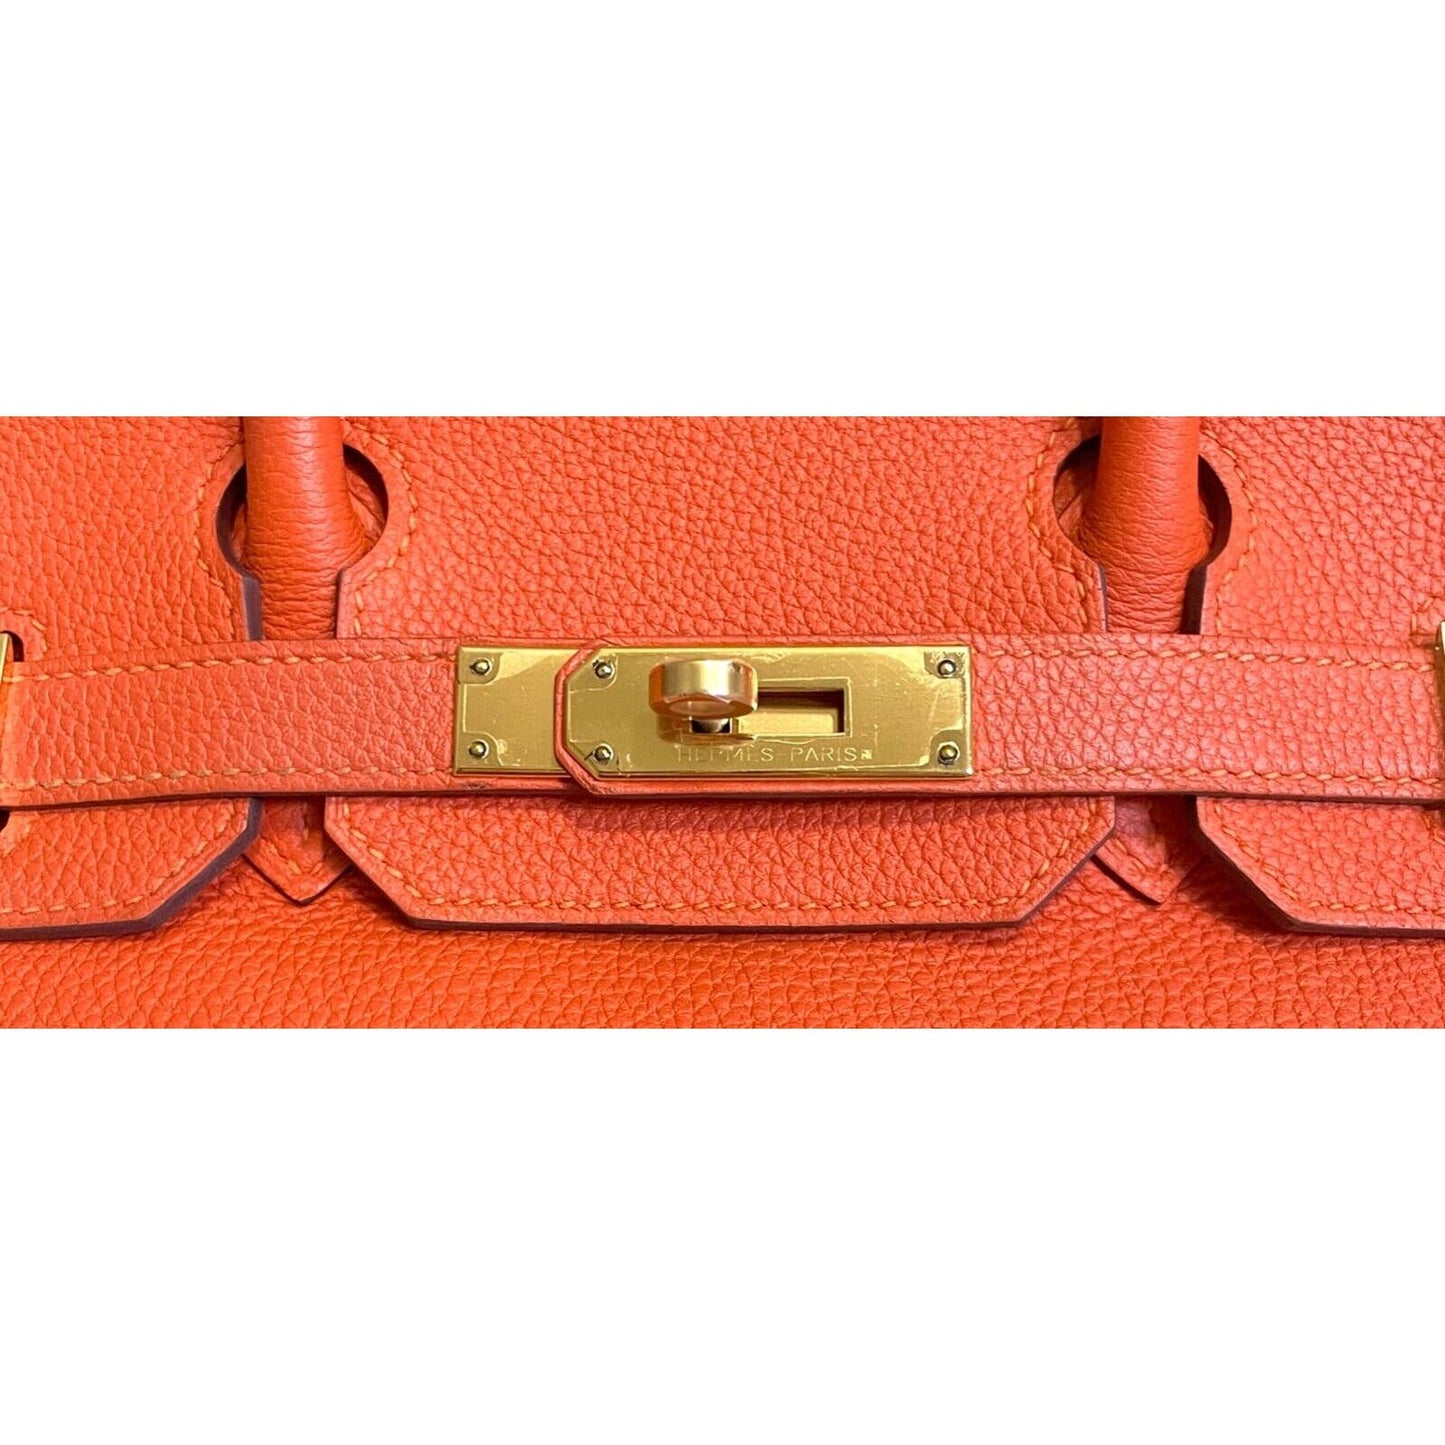 Hermes Birkin 25 Cuivre Orange Togo Leather Gold Hardware For Sale